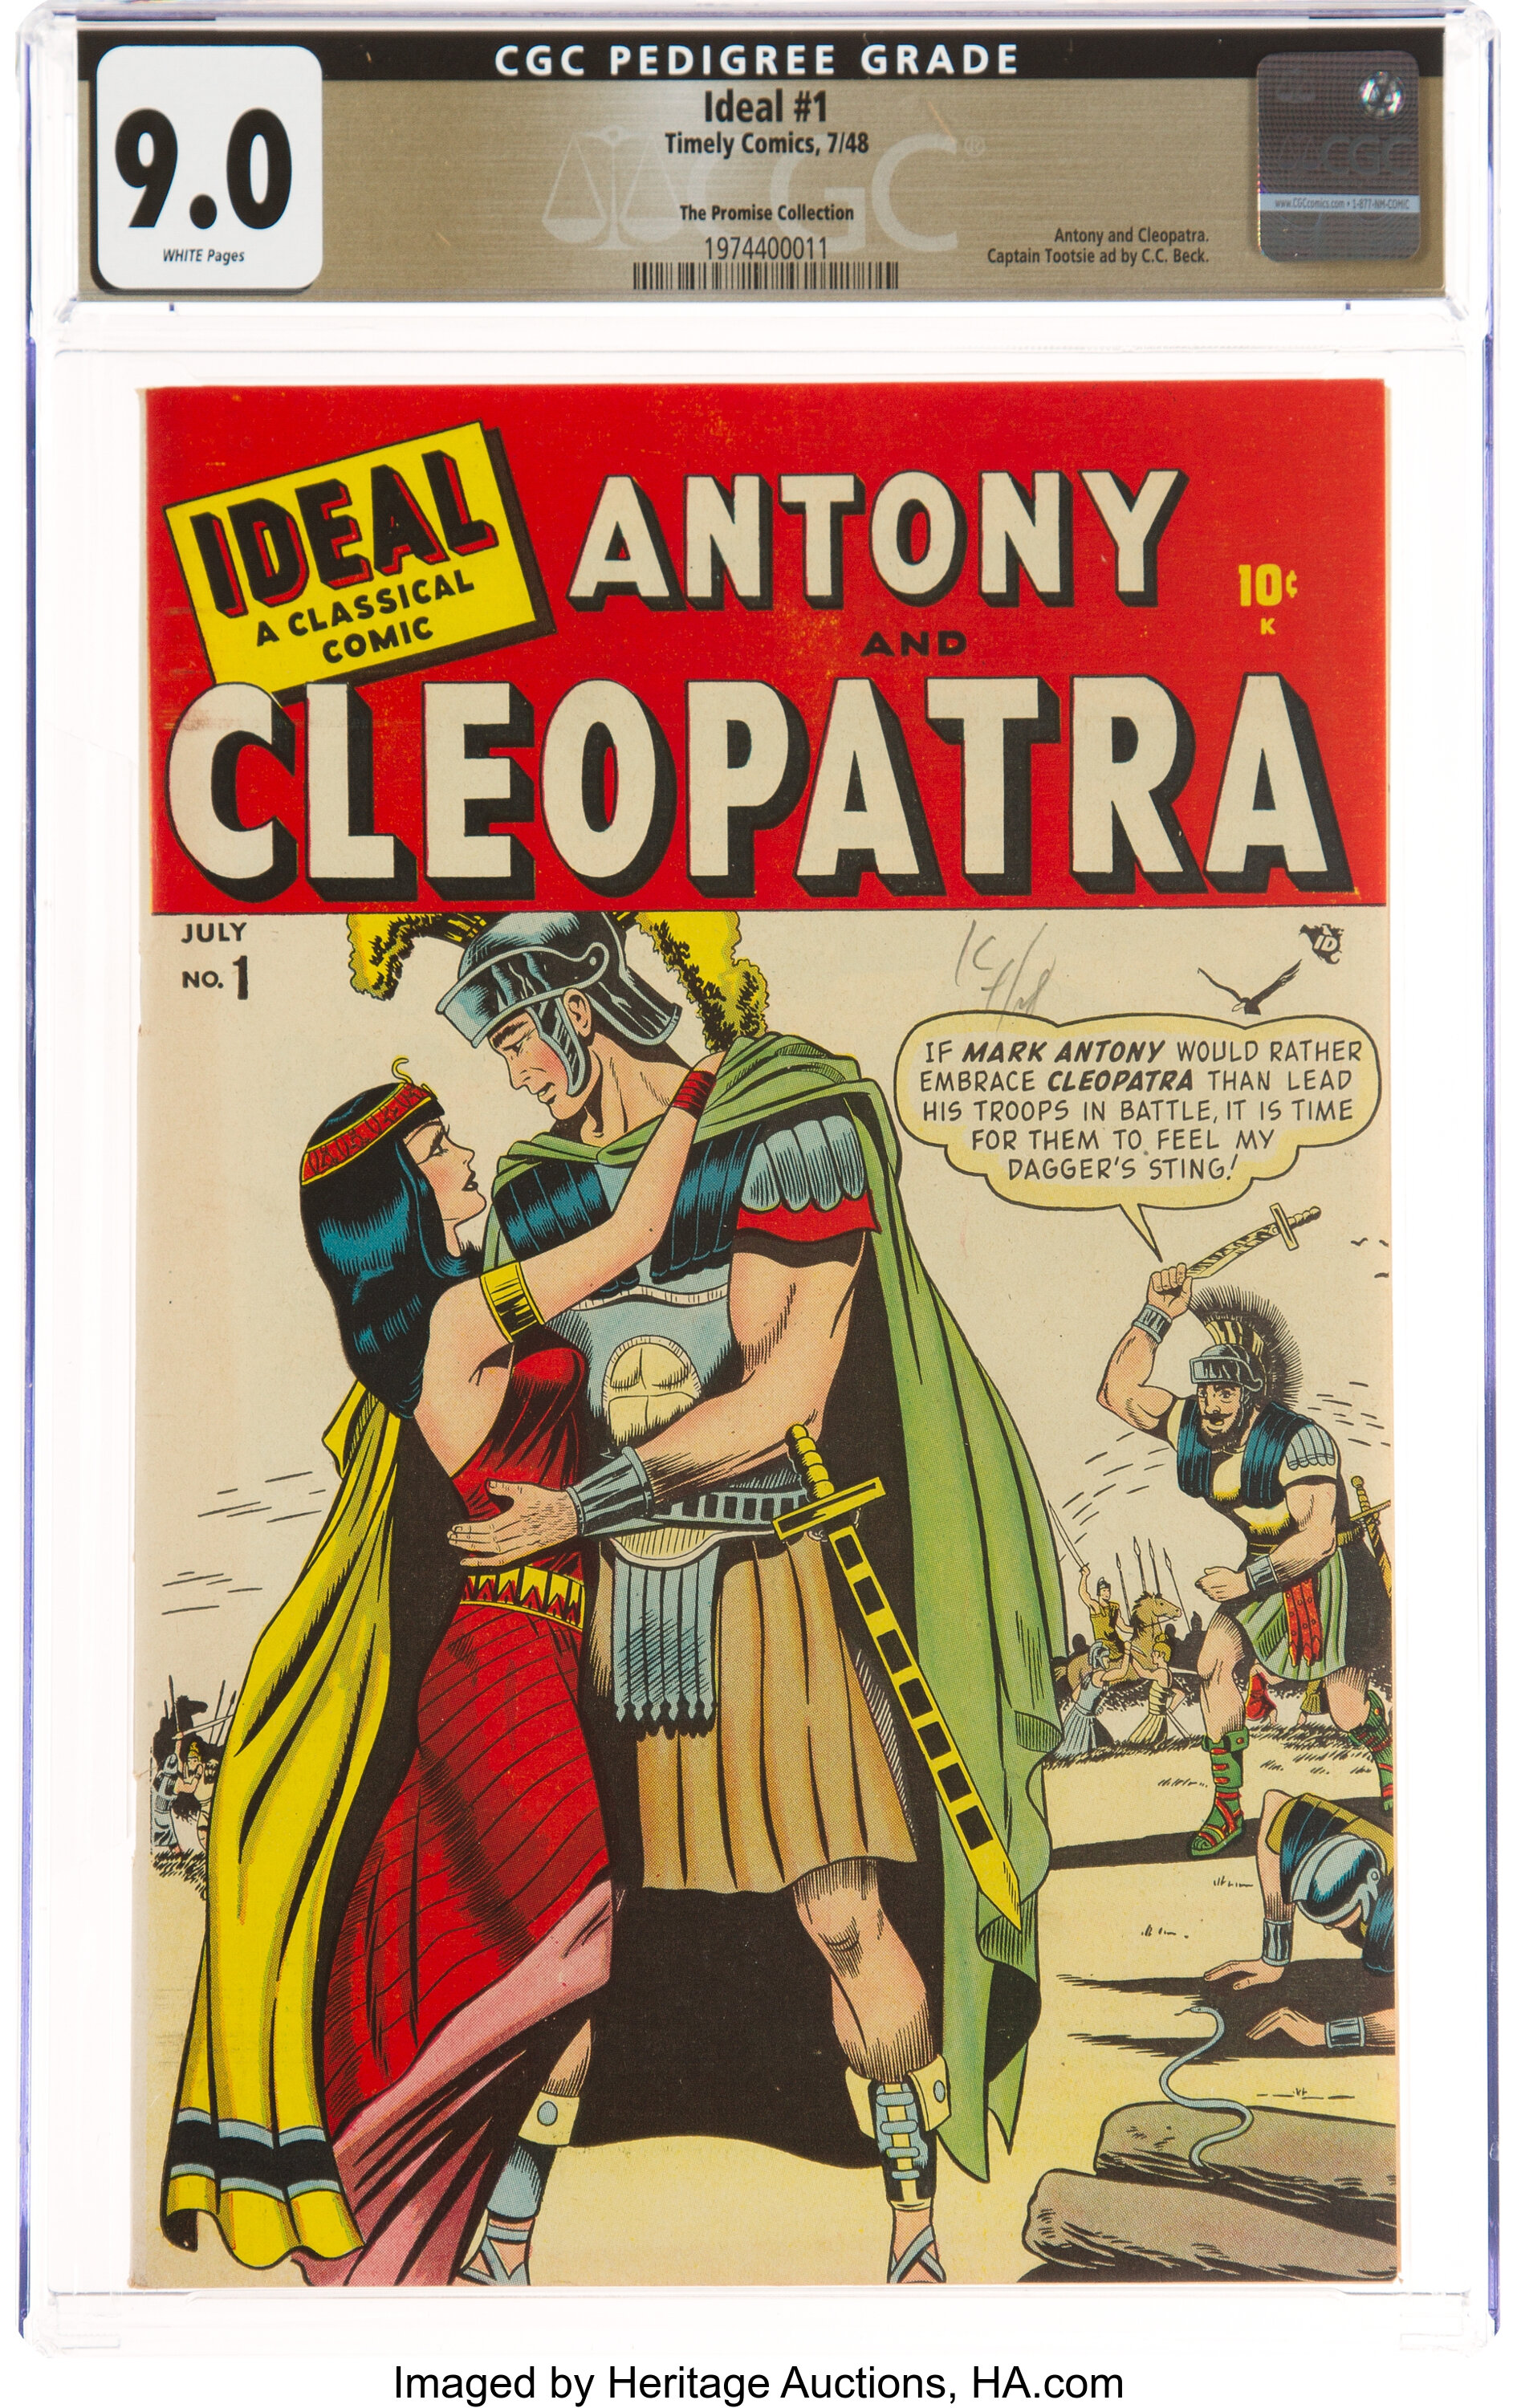 cleopatra comic